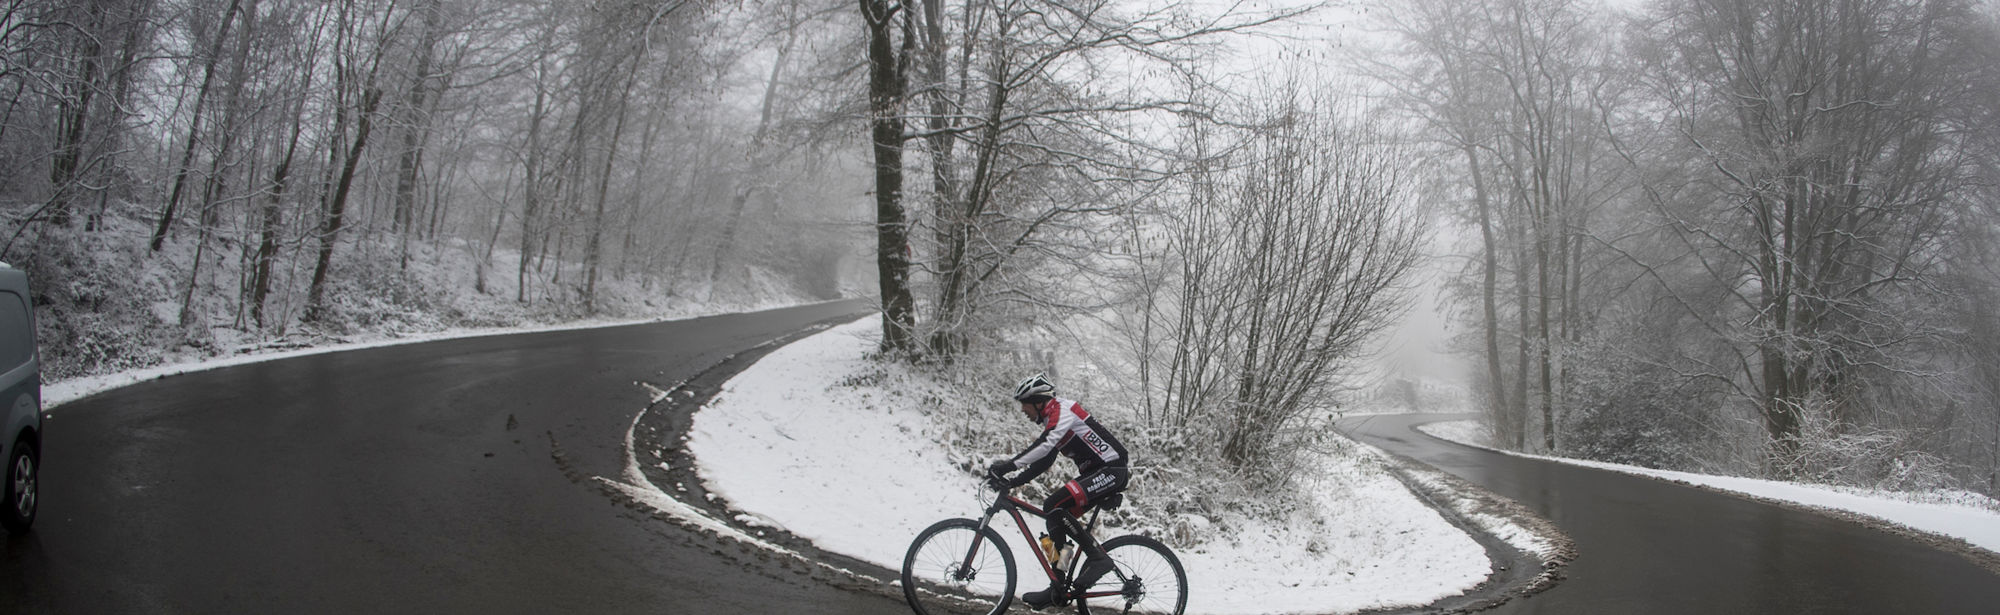 Een fietser beklimt een pittige heuvel in de sneeuw